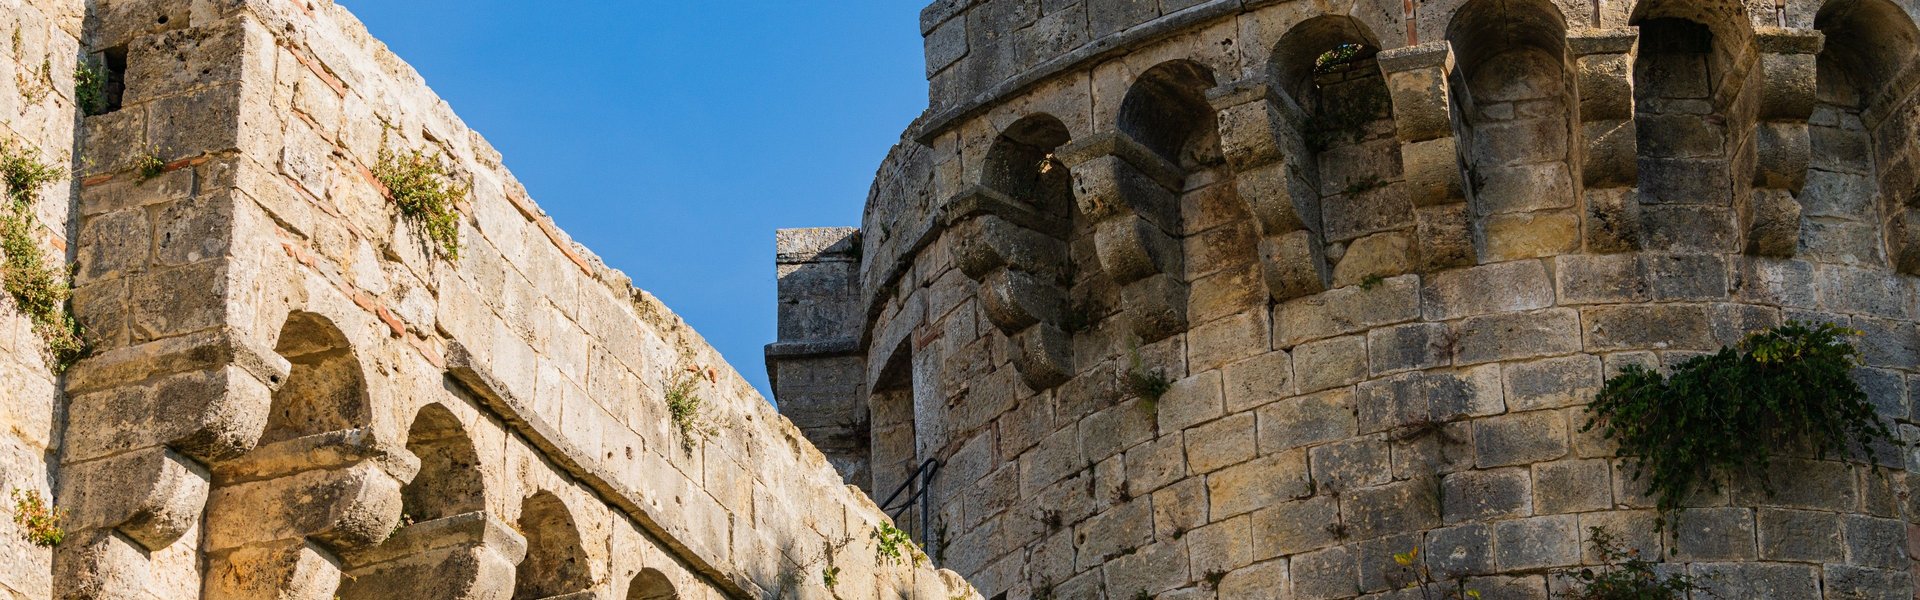 Castello di Sarteano. Torre